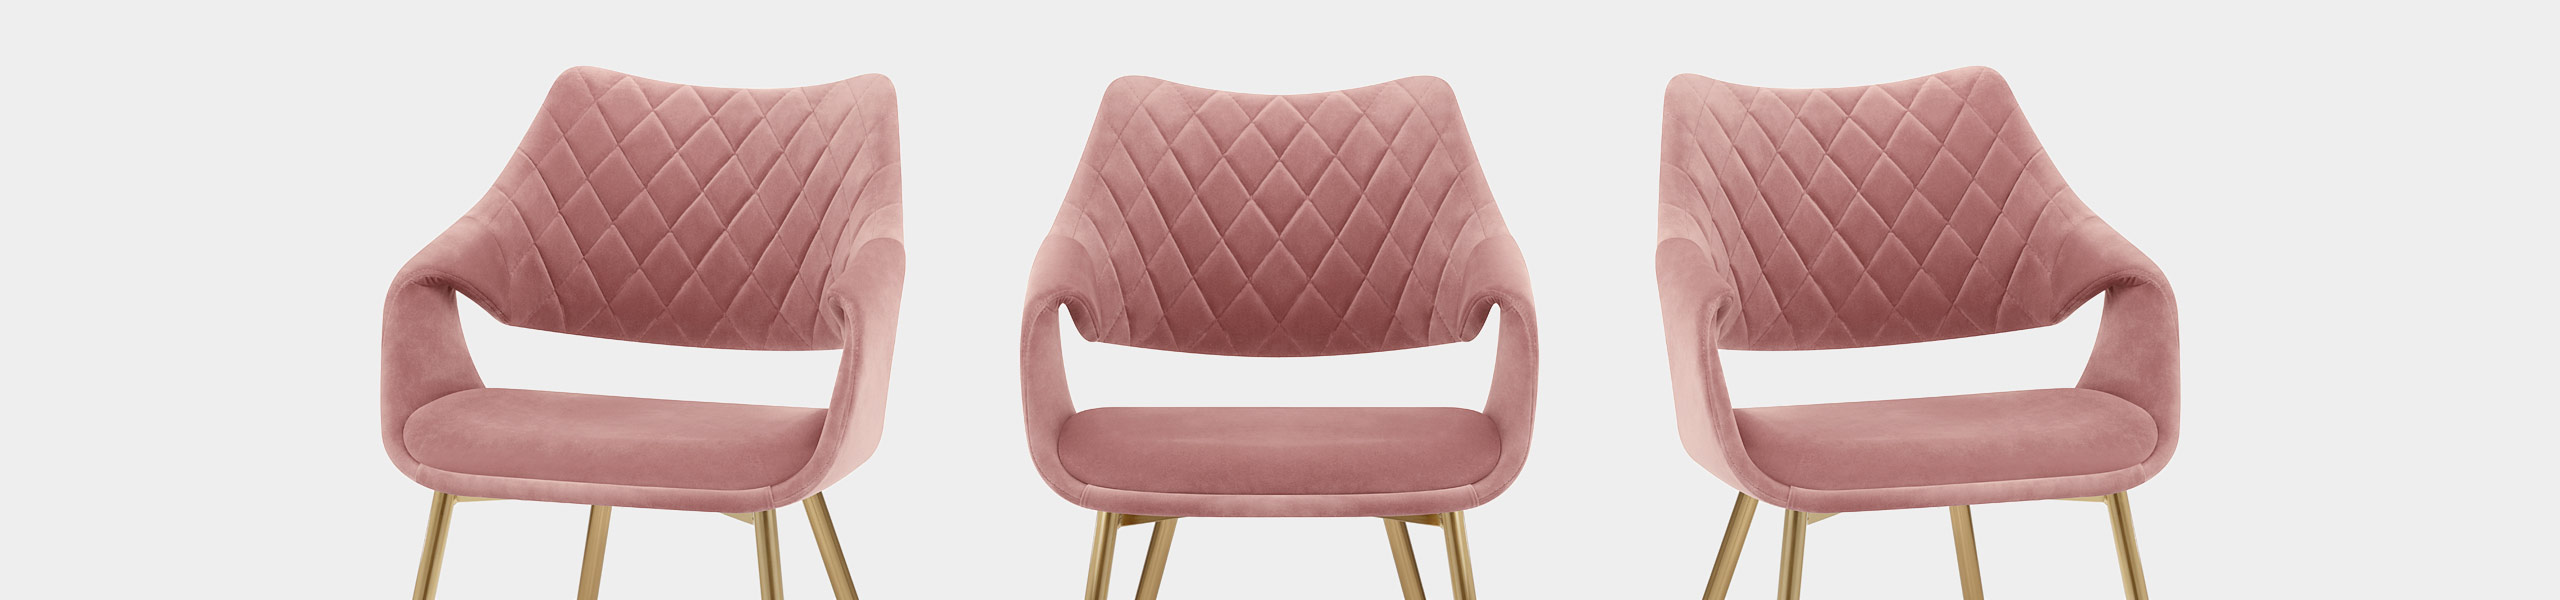 Fairfield Gold Chair Pink Velvet Video Banner